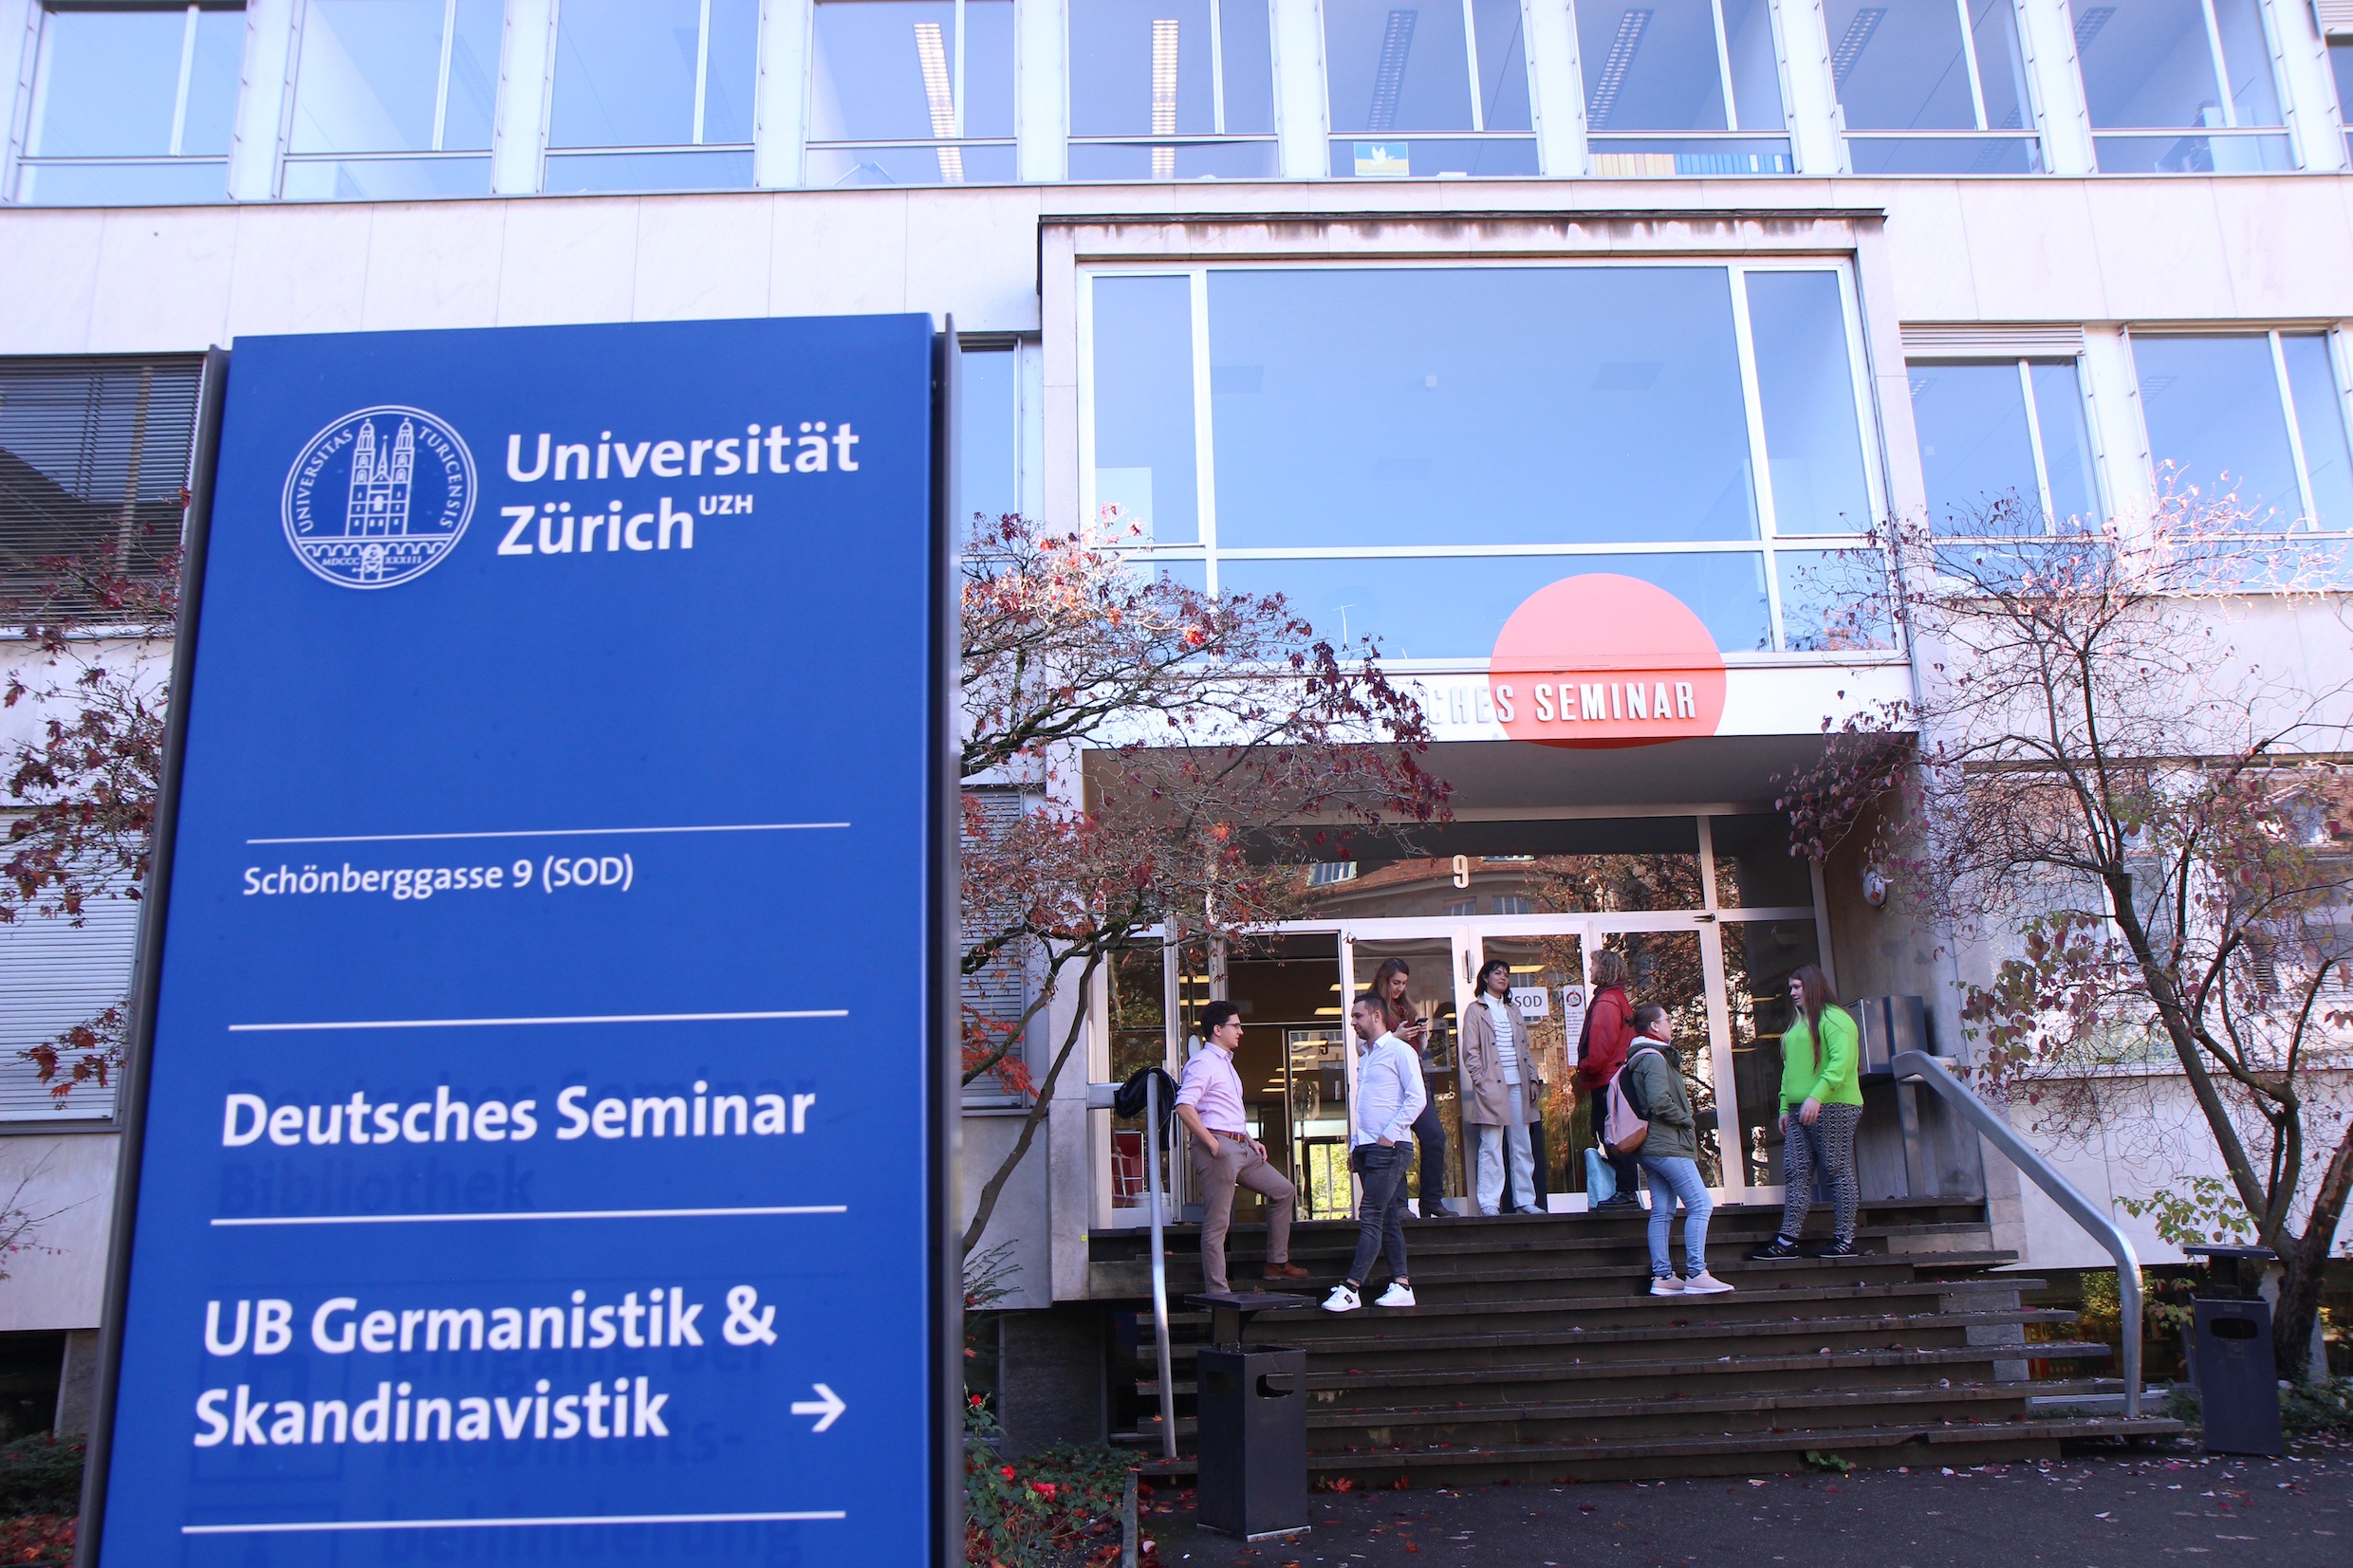 Das Bild zeigt das Deutsche Seminar mit Blick auf den Haupteingang, die grosse Glasfront, die Freitreppe, auf der Studierende stehen und diskutieren. Im Vordergrund steht die Hinweistafel im typischen Blau der Universität.